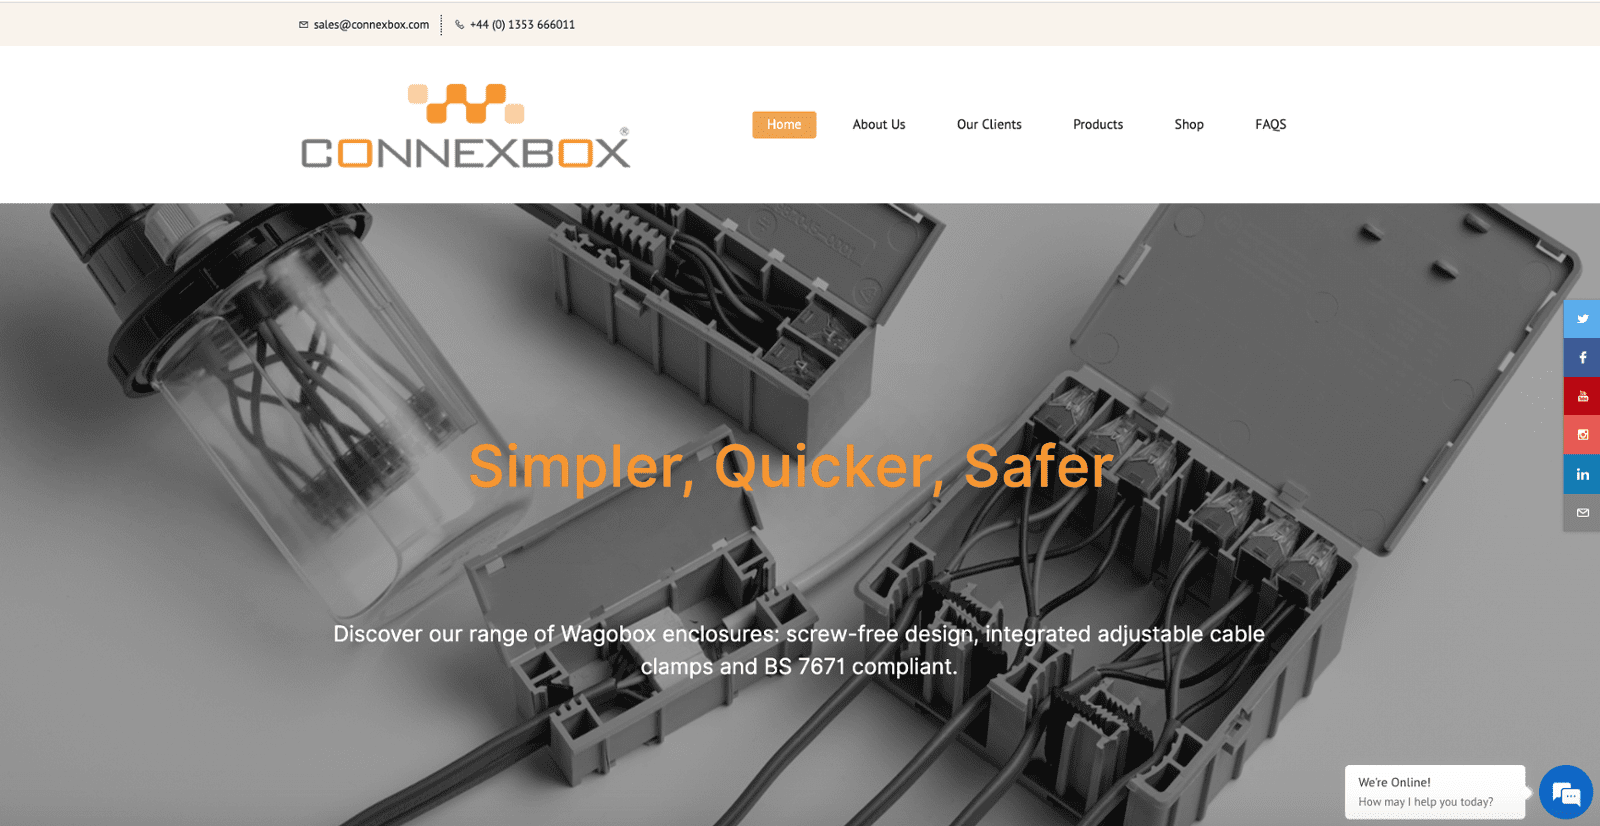 www.connexbox.com